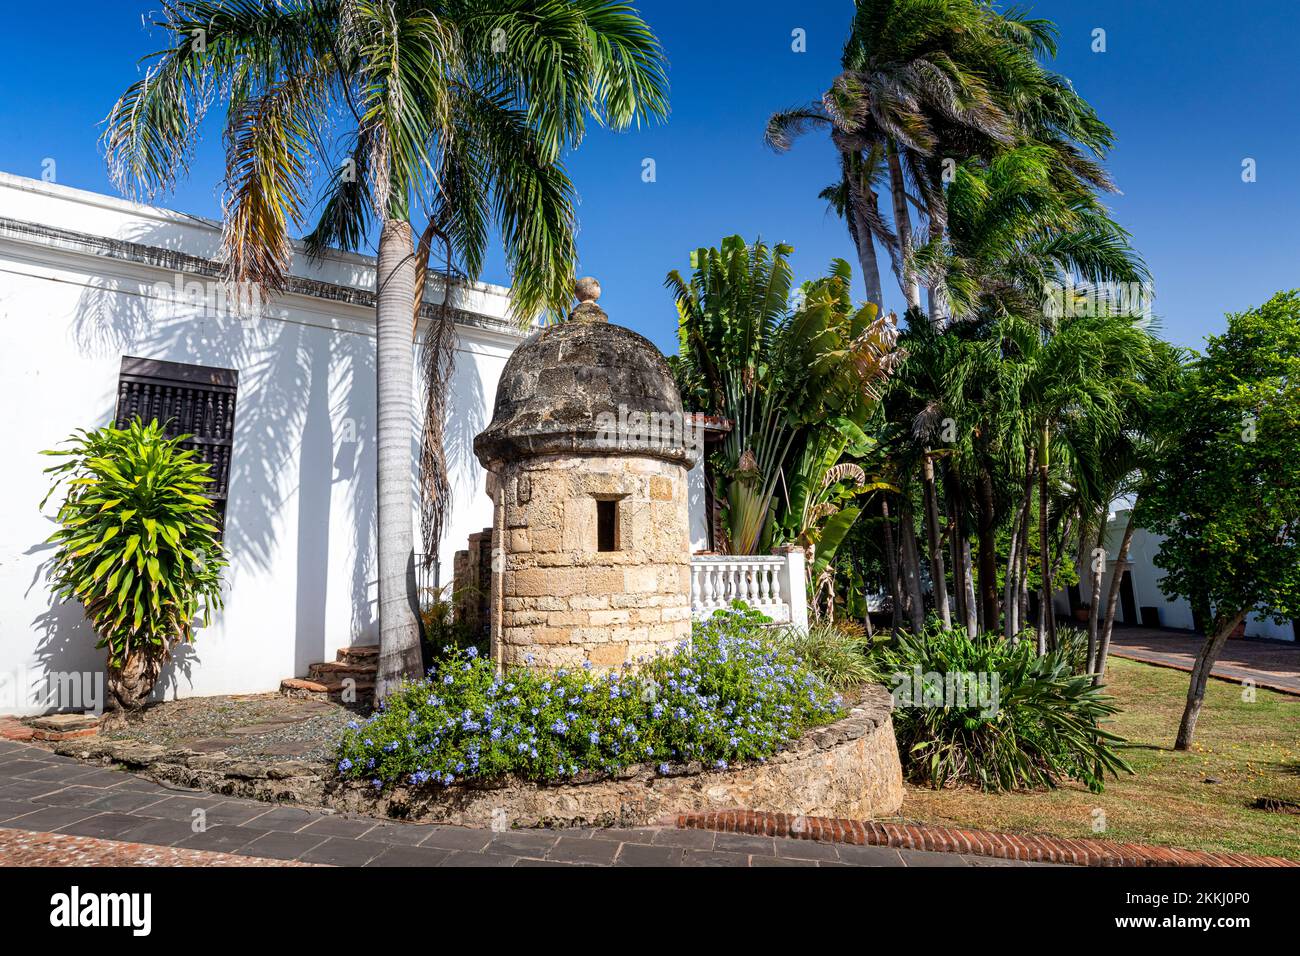 Eintritt zur Casa Blanca, der historischen Heimat von Ponce de Leon in Old San Juan, auf der tropischen karibischen Insel Puerto Rico, USA. Stockfoto